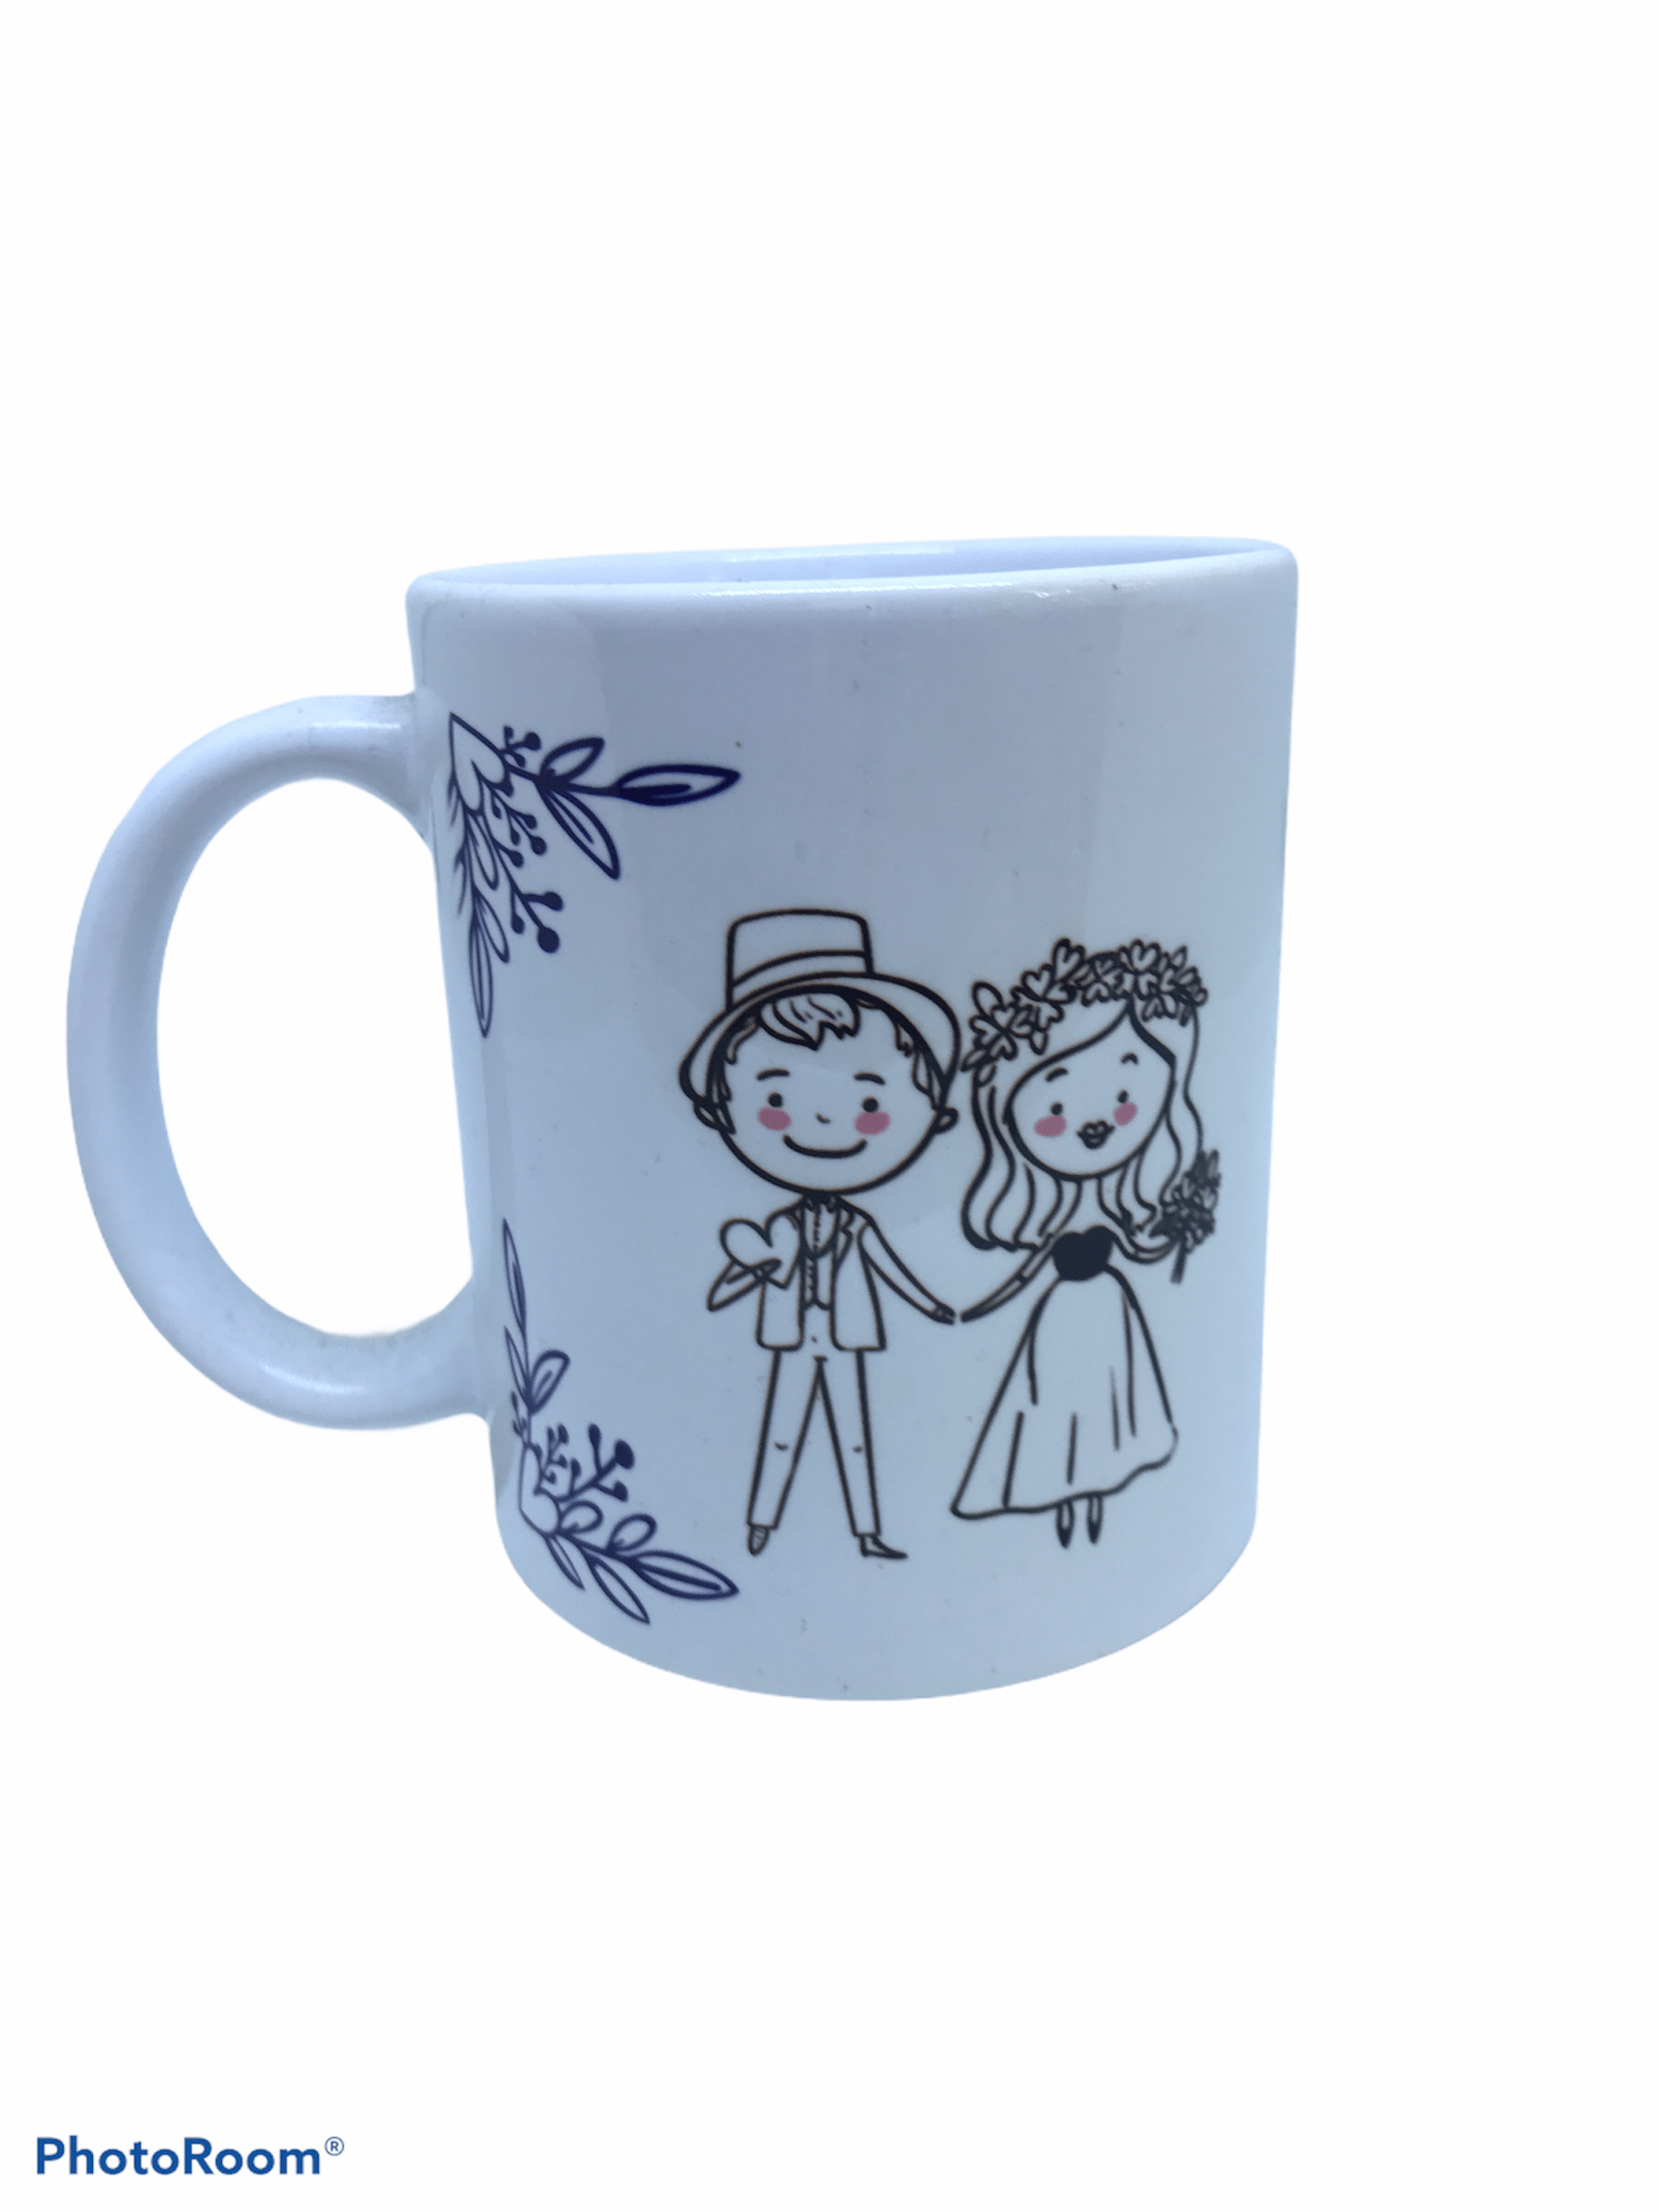 Tazza da colazione in ceramica matrimonio design - Dolci pensieri gift